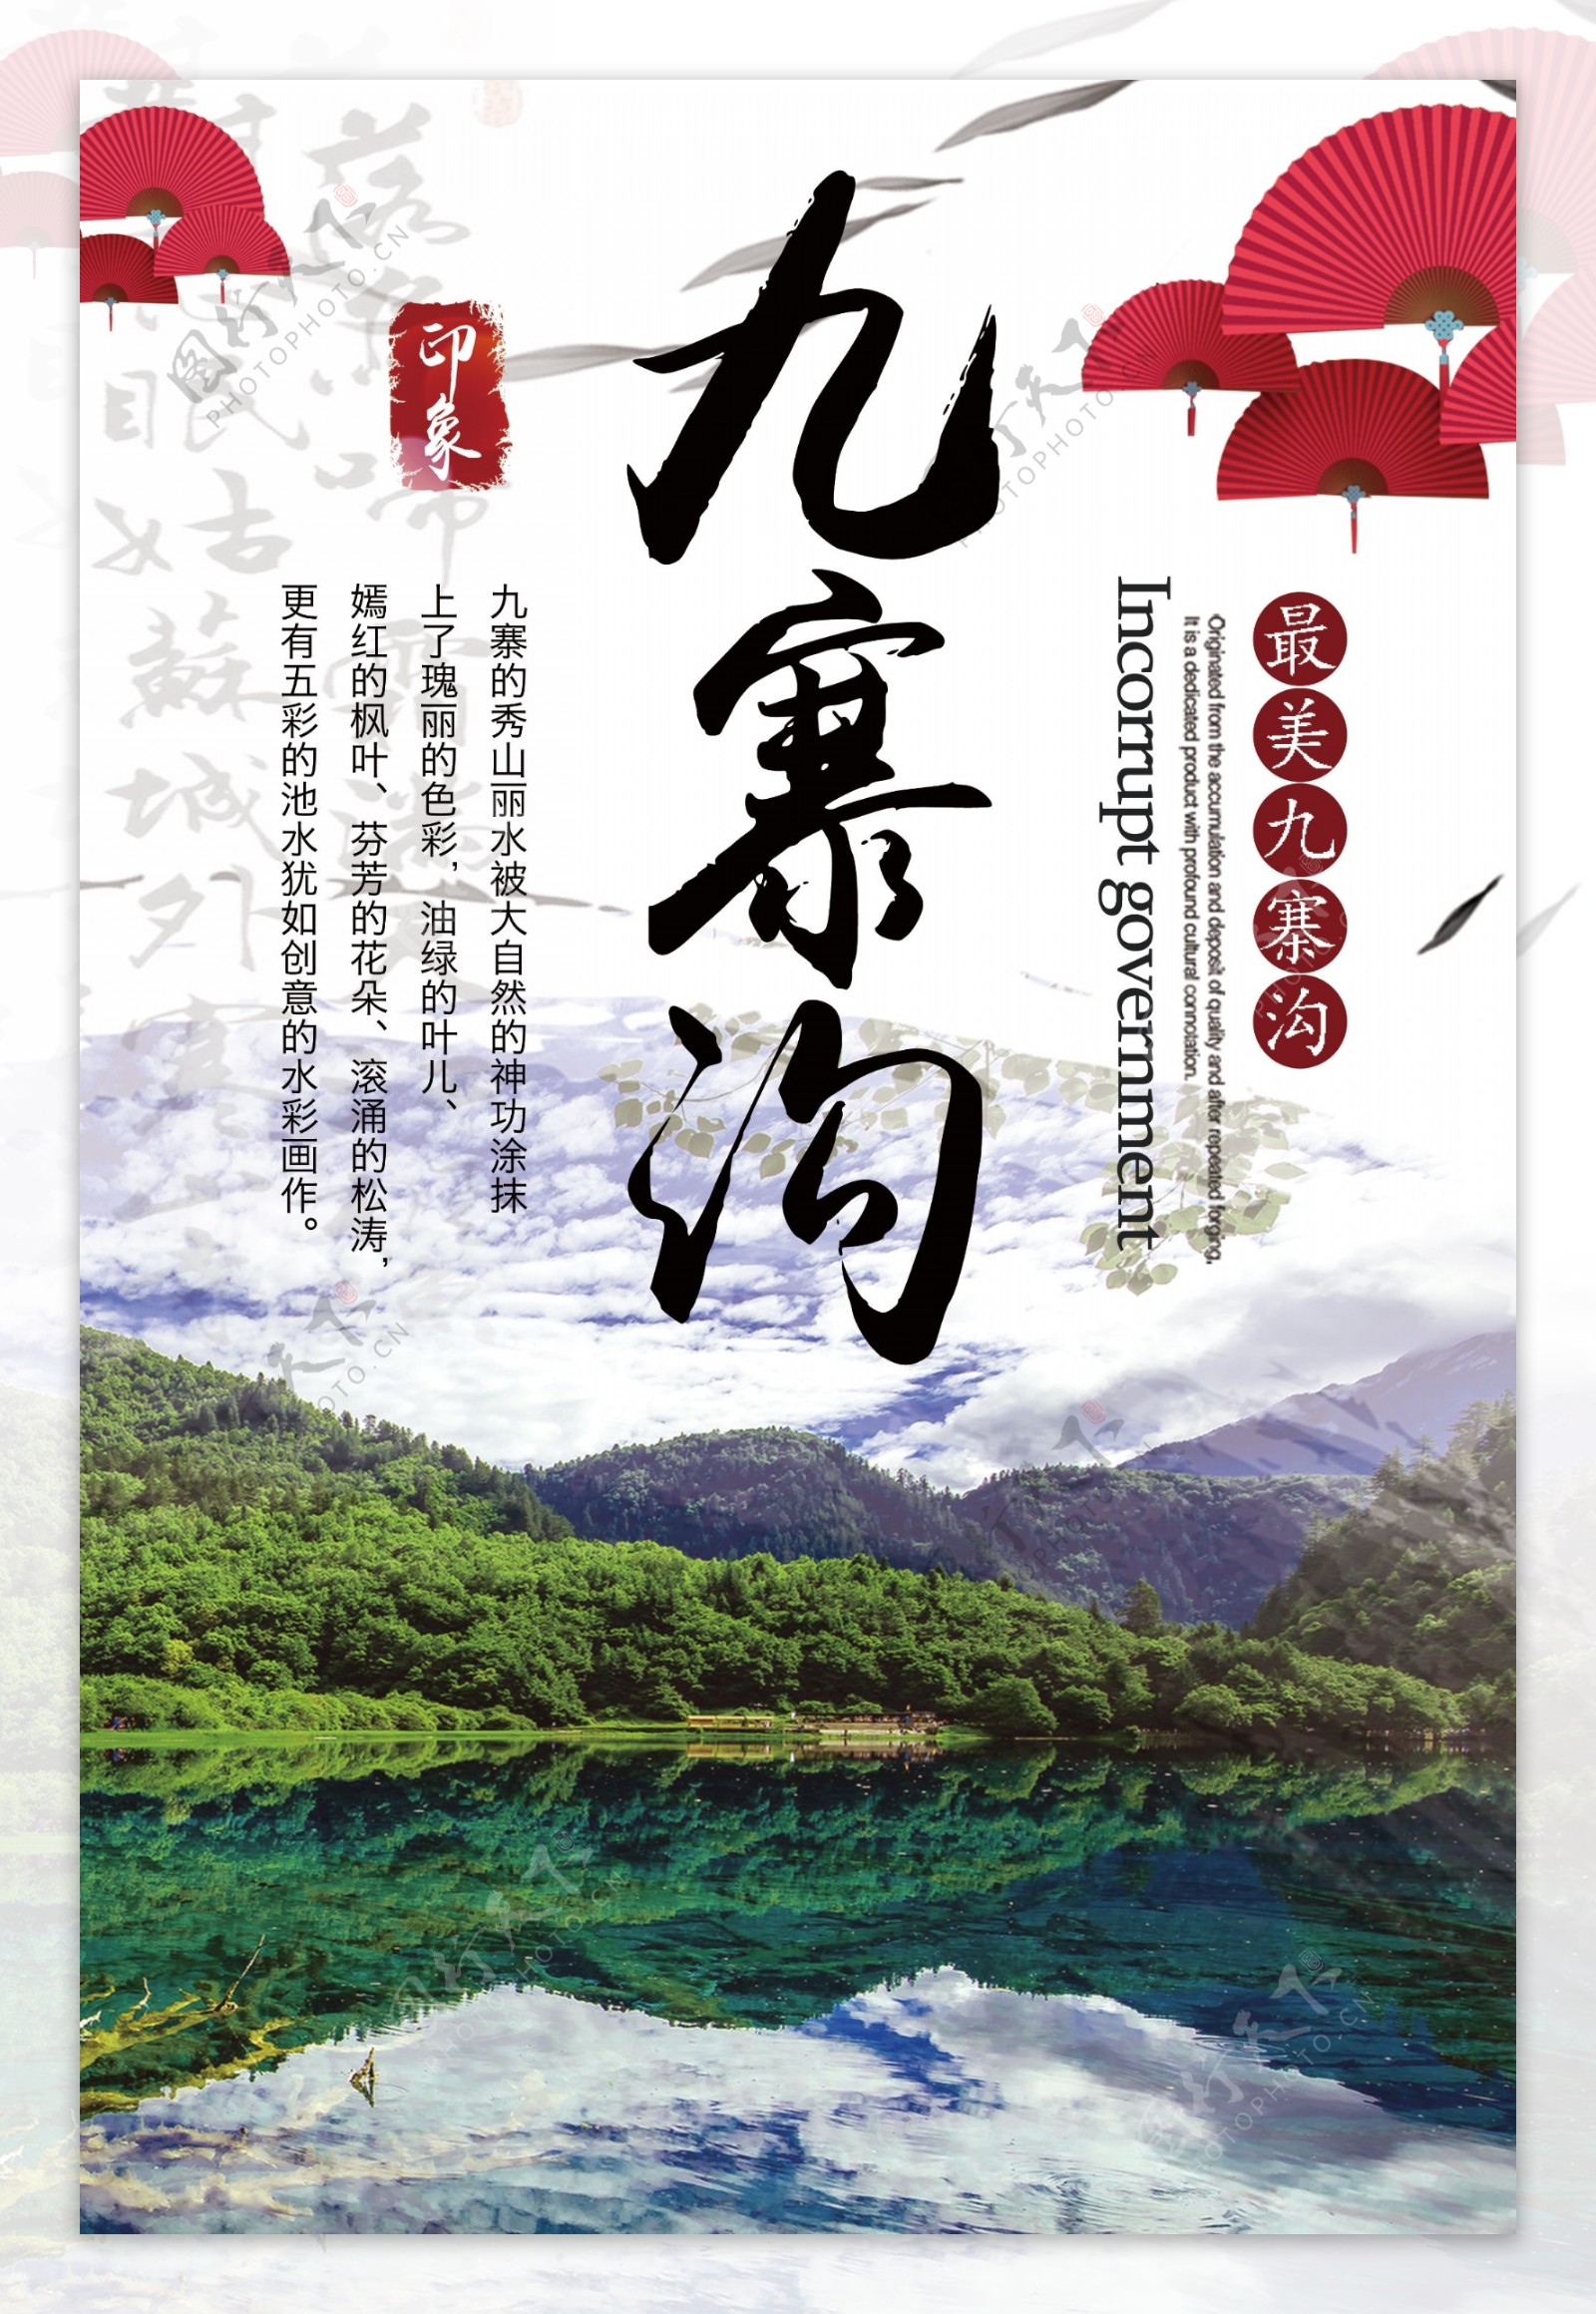 中国风水墨画背景国内游九寨沟旅游季海报